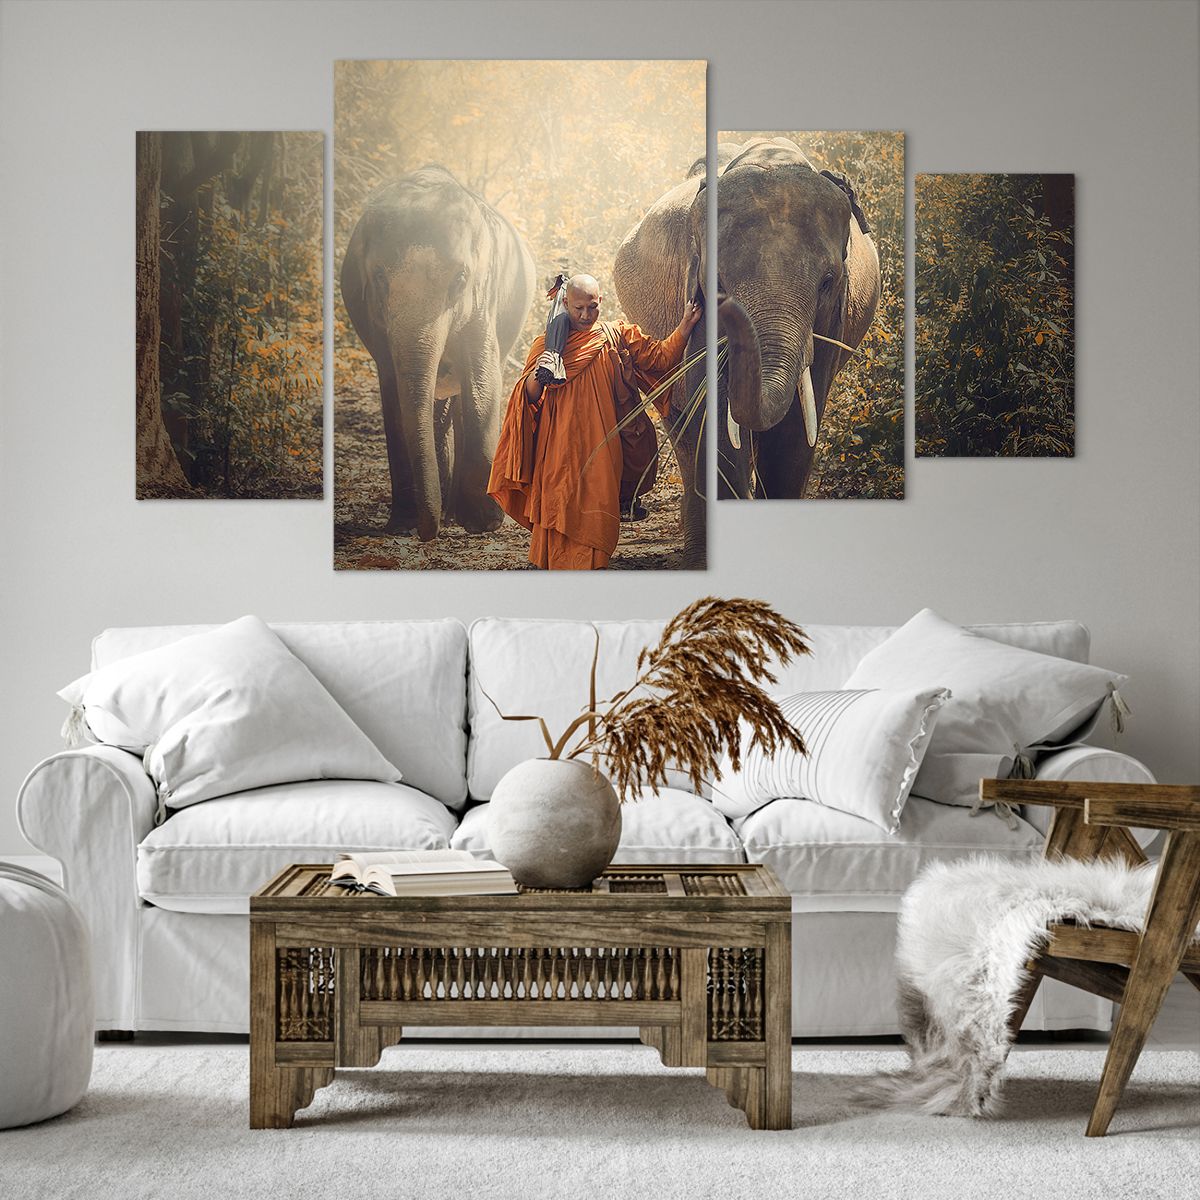 Impression sur toile Asie, Impression sur toile Éléphant, Impression sur toile Moine, Impression sur toile Jungle, Impression sur toile Bouddhisme